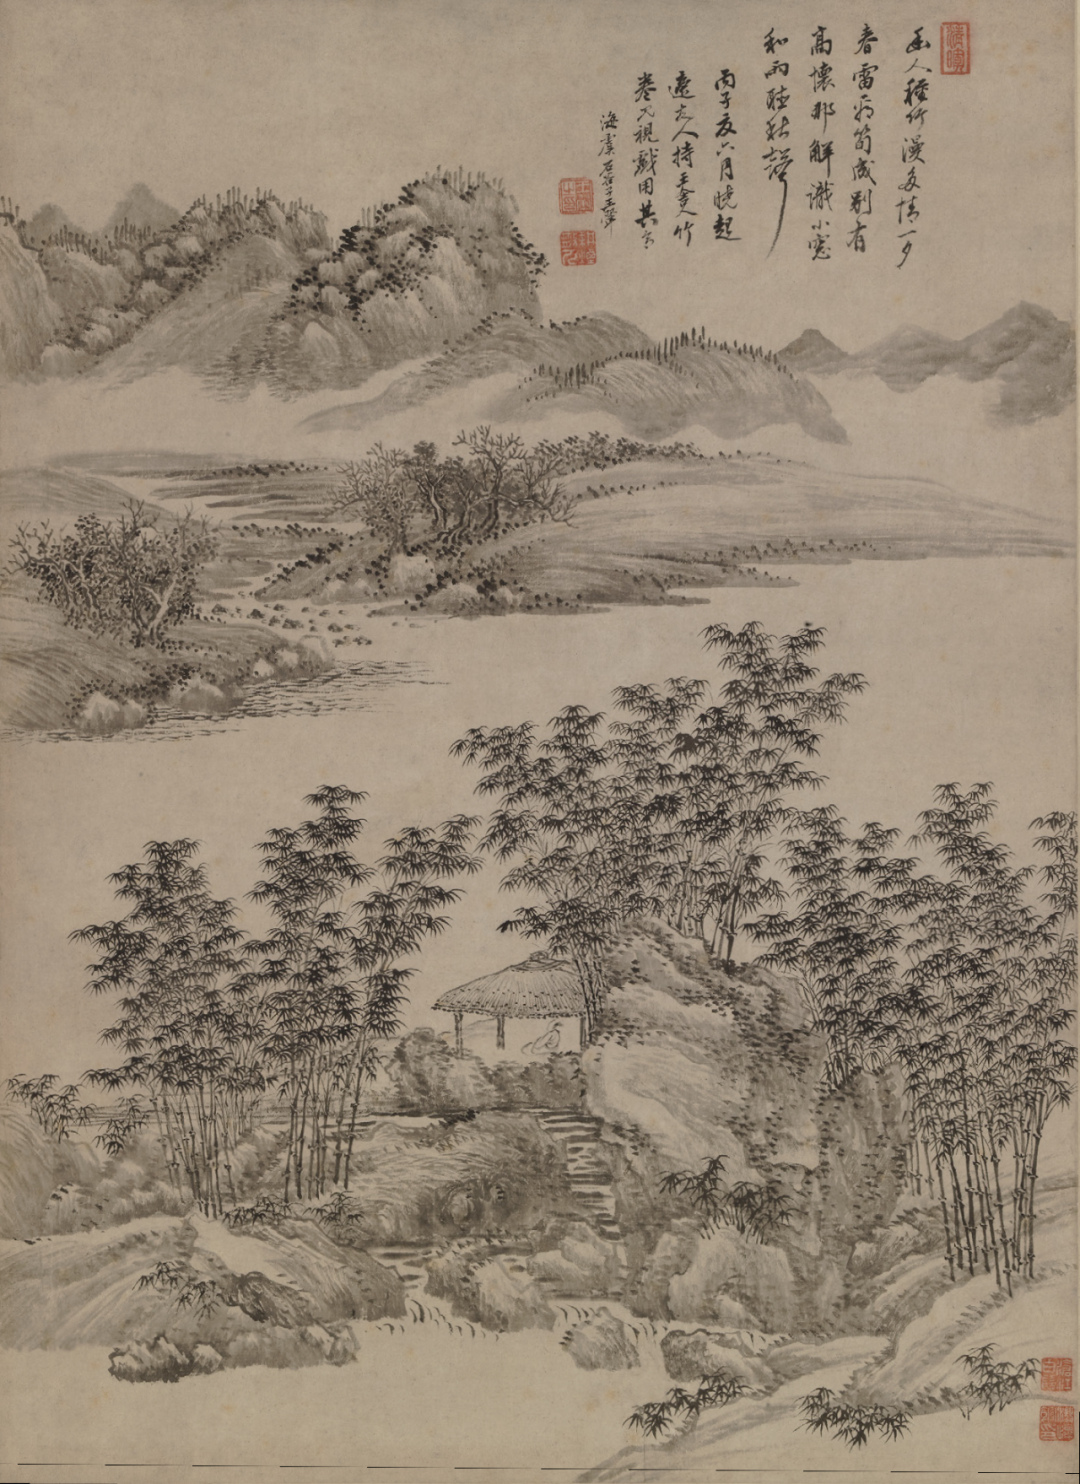 （清）王翚《竹亭清远图》，上海博物馆藏  《三松堂书画记》著录